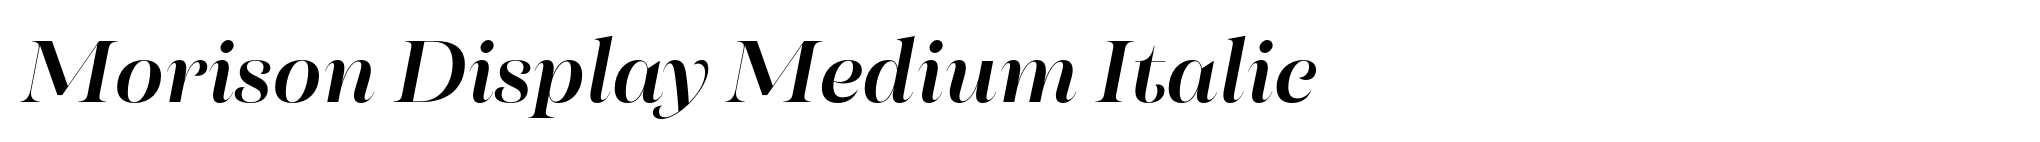 Morison Display Medium Italic image